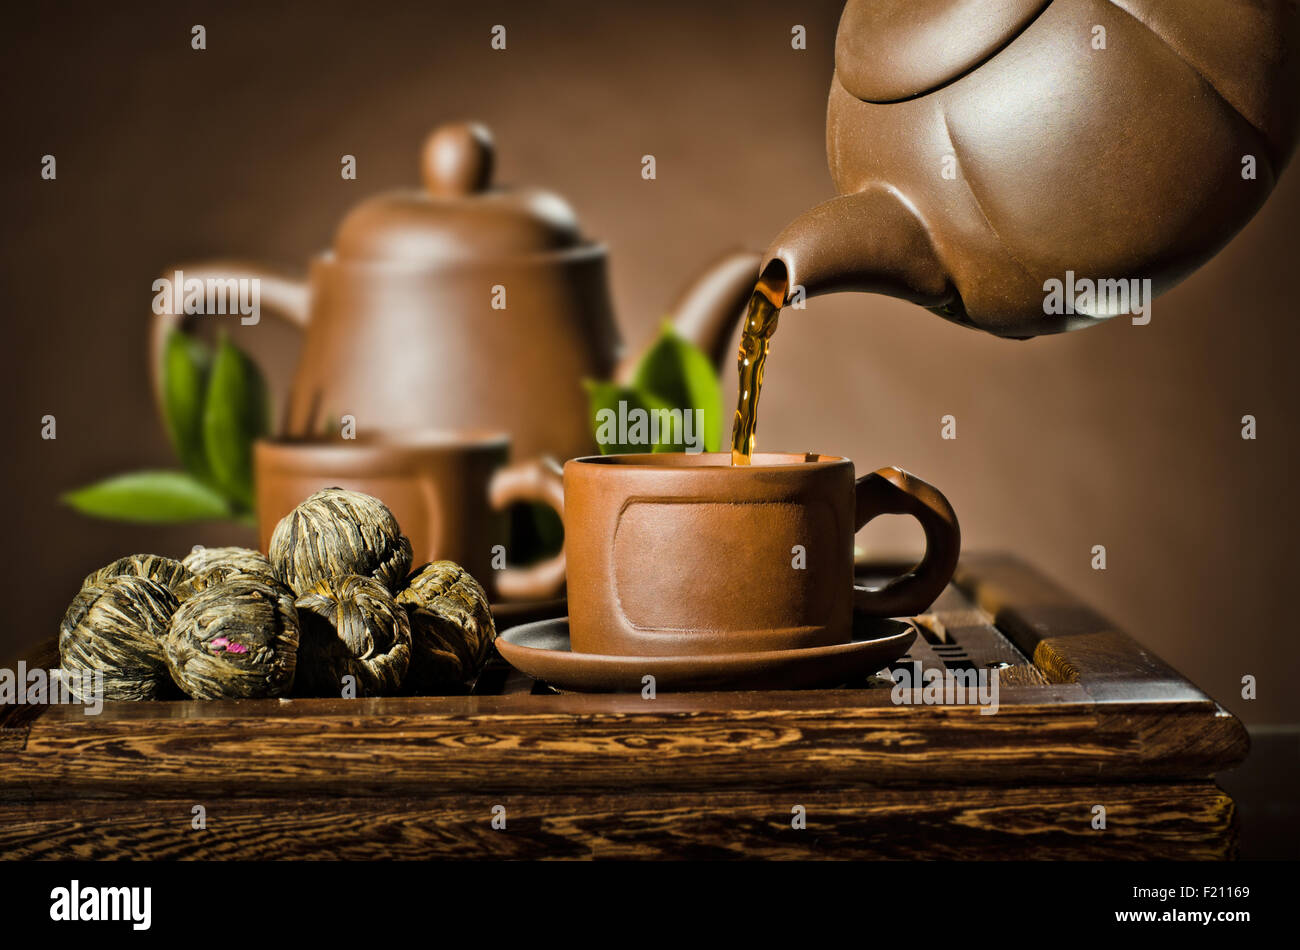 Photo horizontale, de l'argile thé théière tasse à débit sur fond brun, cérémonie du thé Banque D'Images